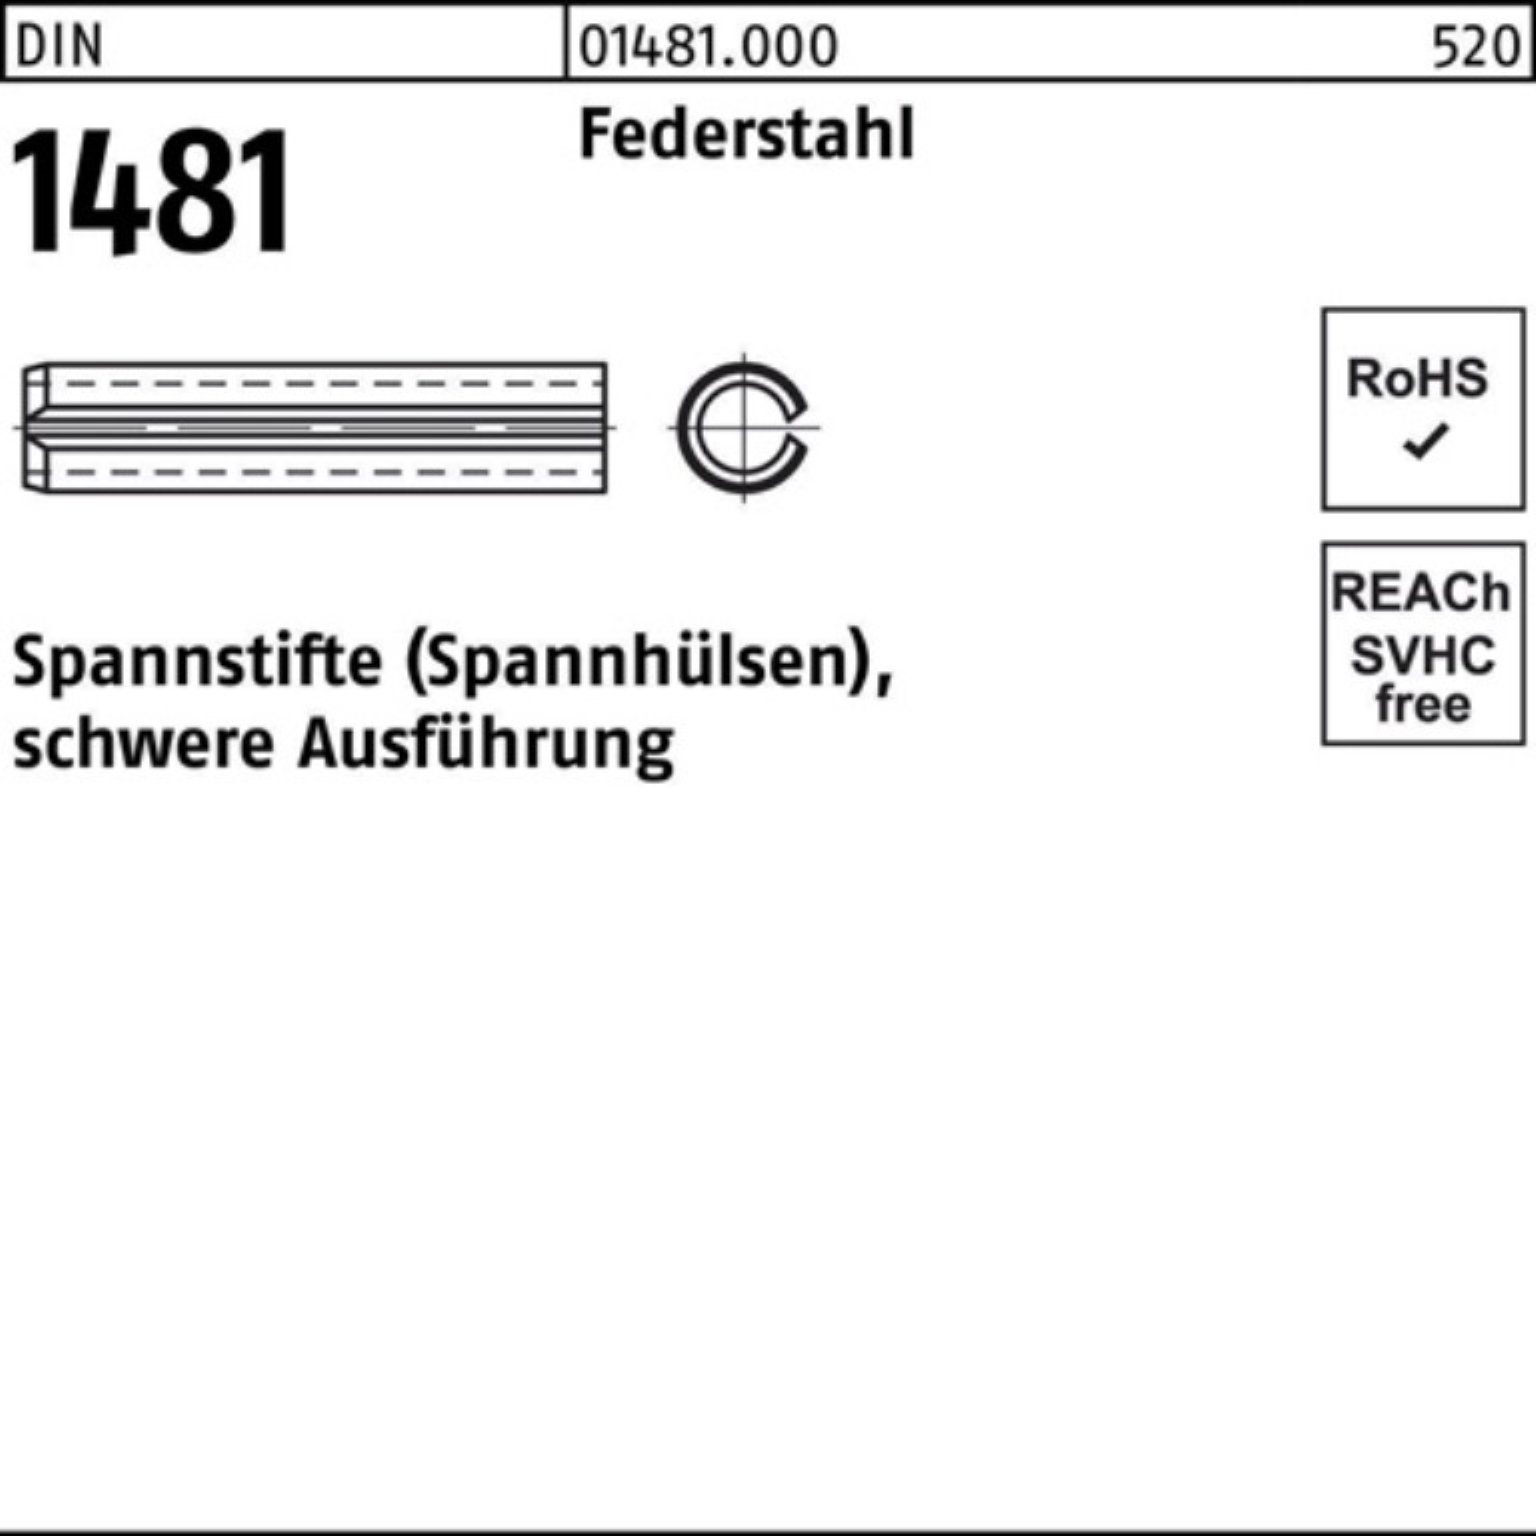 1481 12x Federstahl 100er Spannstift Reyher DIN schwere Ausführung Spannstift Pack 100